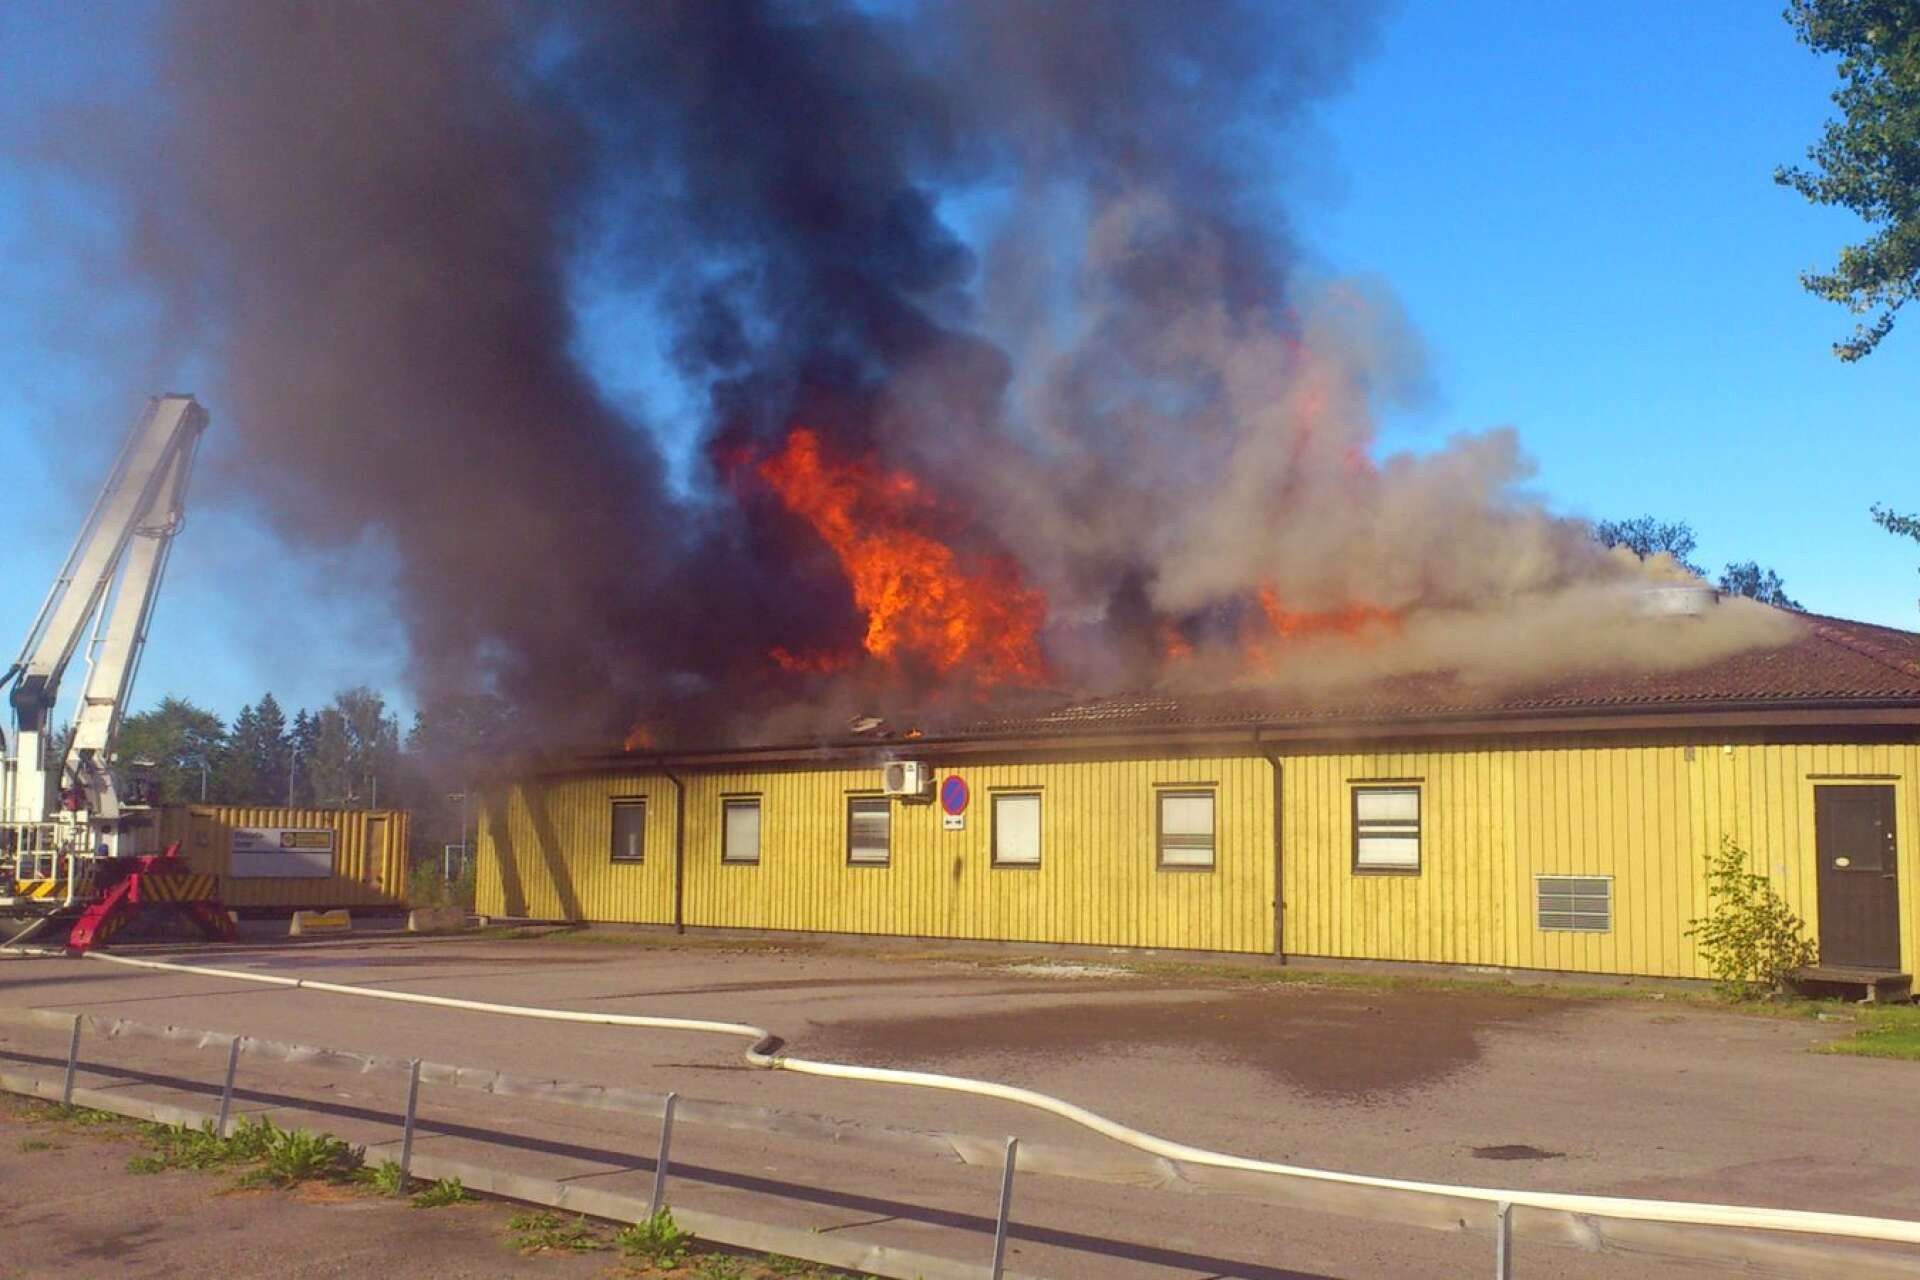 På Nytorget låg länge en paviljong som bland annat inrymde skolkök och lokaler för teknikundervisning. En augustidag 2011 brann paviljongen ned. Elden spred sig snabbt i byggnaden som inte kunde räddas. 